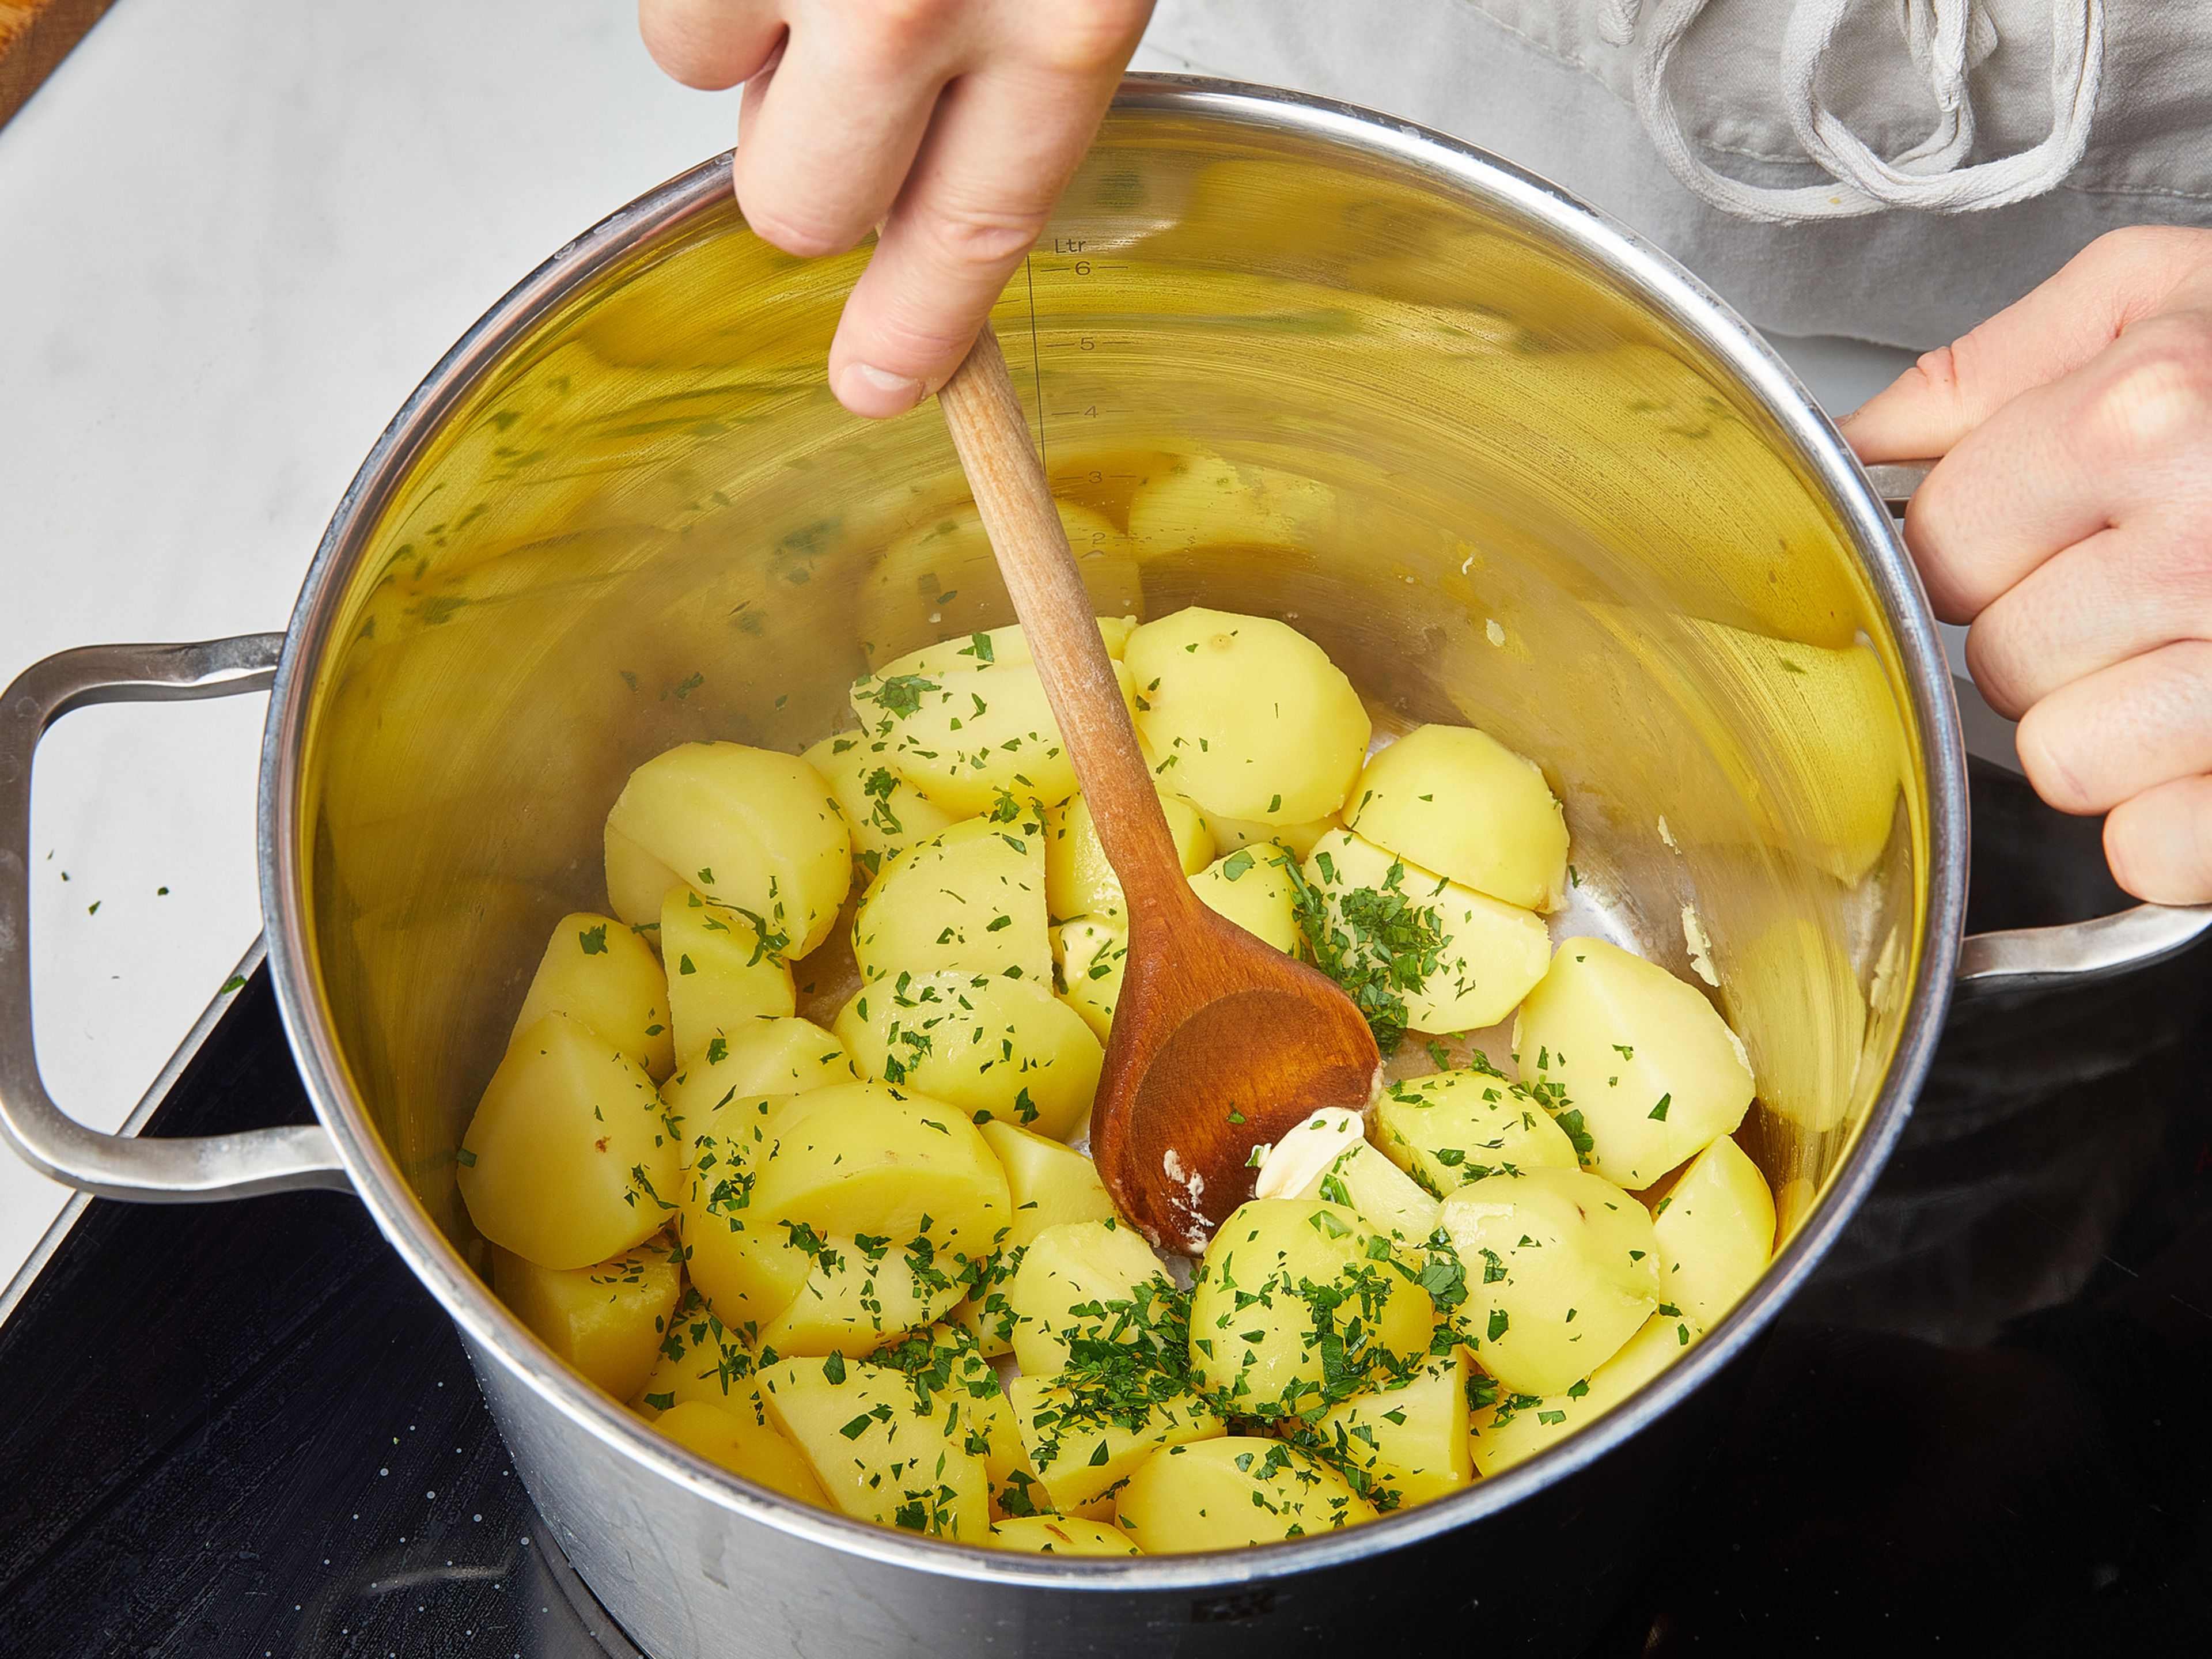 Den zuvor verwendeten großen Topf ausspülen und mit Wasser füllen. Salz hinzufügen und zum Kochen bringen. In der Zwischenzeit die Kartoffeln schälen, je nach Größe halbieren oder vierteln, in den Topf geben und bei mittlerer Hitze ca. 10–15 Min. kochen. Dann das Wasser abgießen, die Kartoffeln zurück in den Topf geben und mit Margarine ca. 2 Min. andünsten. Vom Herd nehmen und mit einem Deckel abdecken. Kurz vor dem Servieren die restliche Petersilie unterheben. Die Kohlrouladen mit Petersilienkartoffeln und Zwiebelsoße servieren.